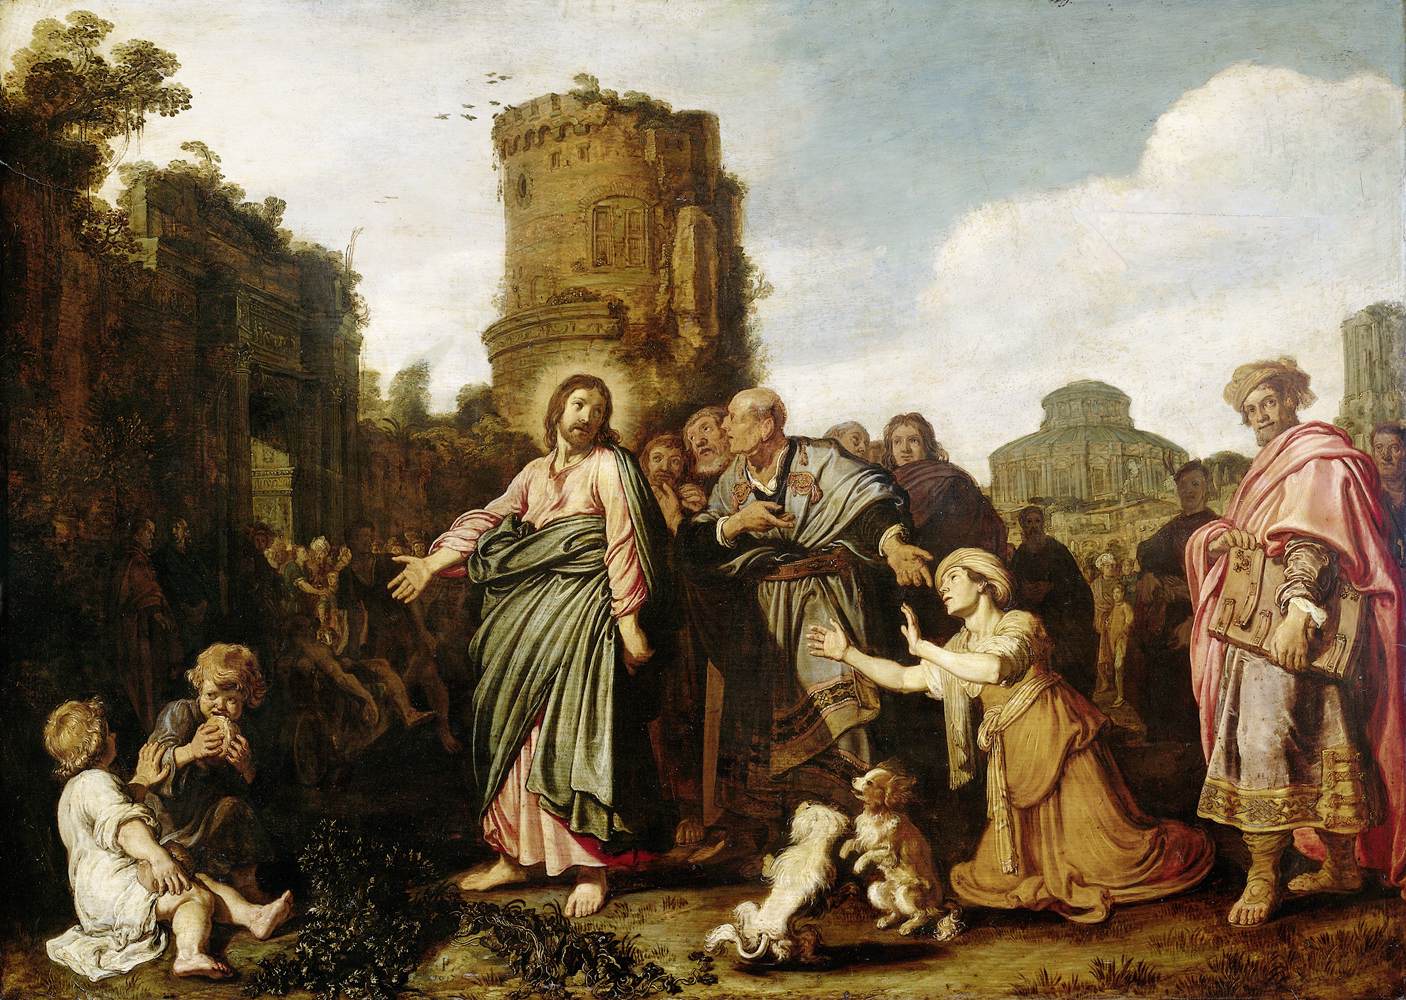 耶稣基督与迦南妇人 by 彼得 拉斯特曼 - 1617 